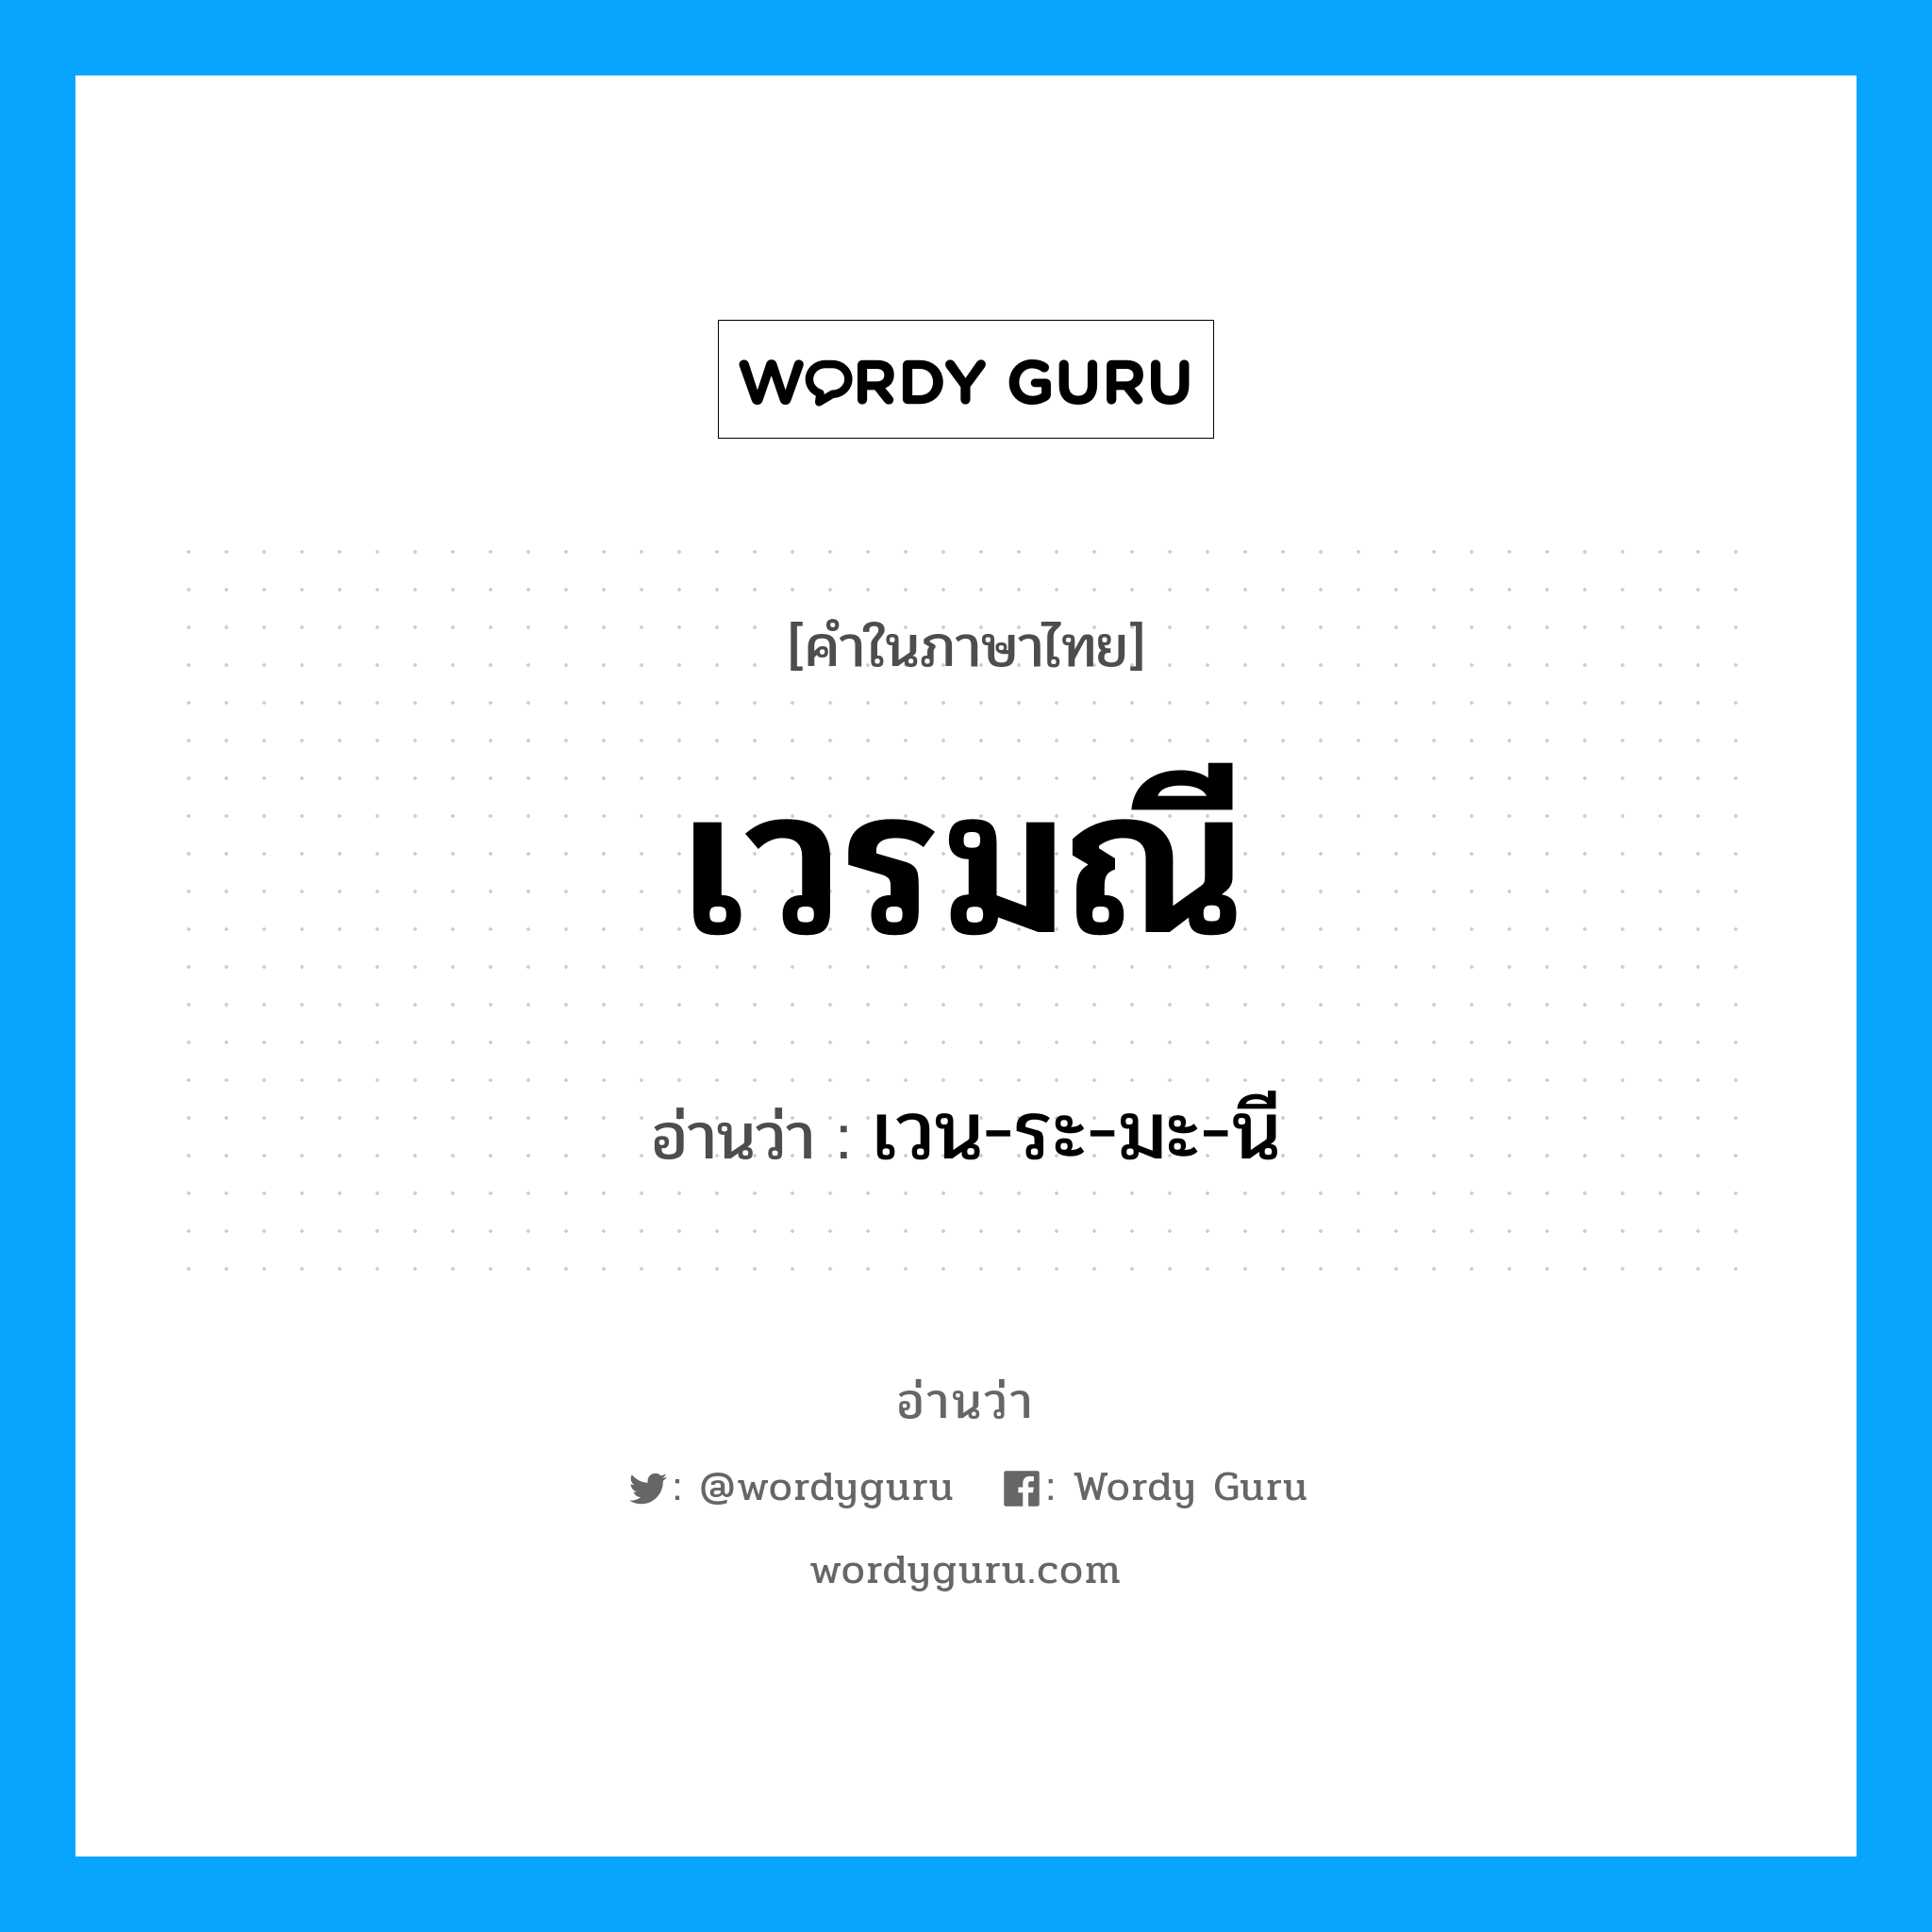 เวน-ระ-มะ-นี เป็นคำอ่านของคำไหน?, คำในภาษาไทย เวน-ระ-มะ-นี อ่านว่า เวรมณี